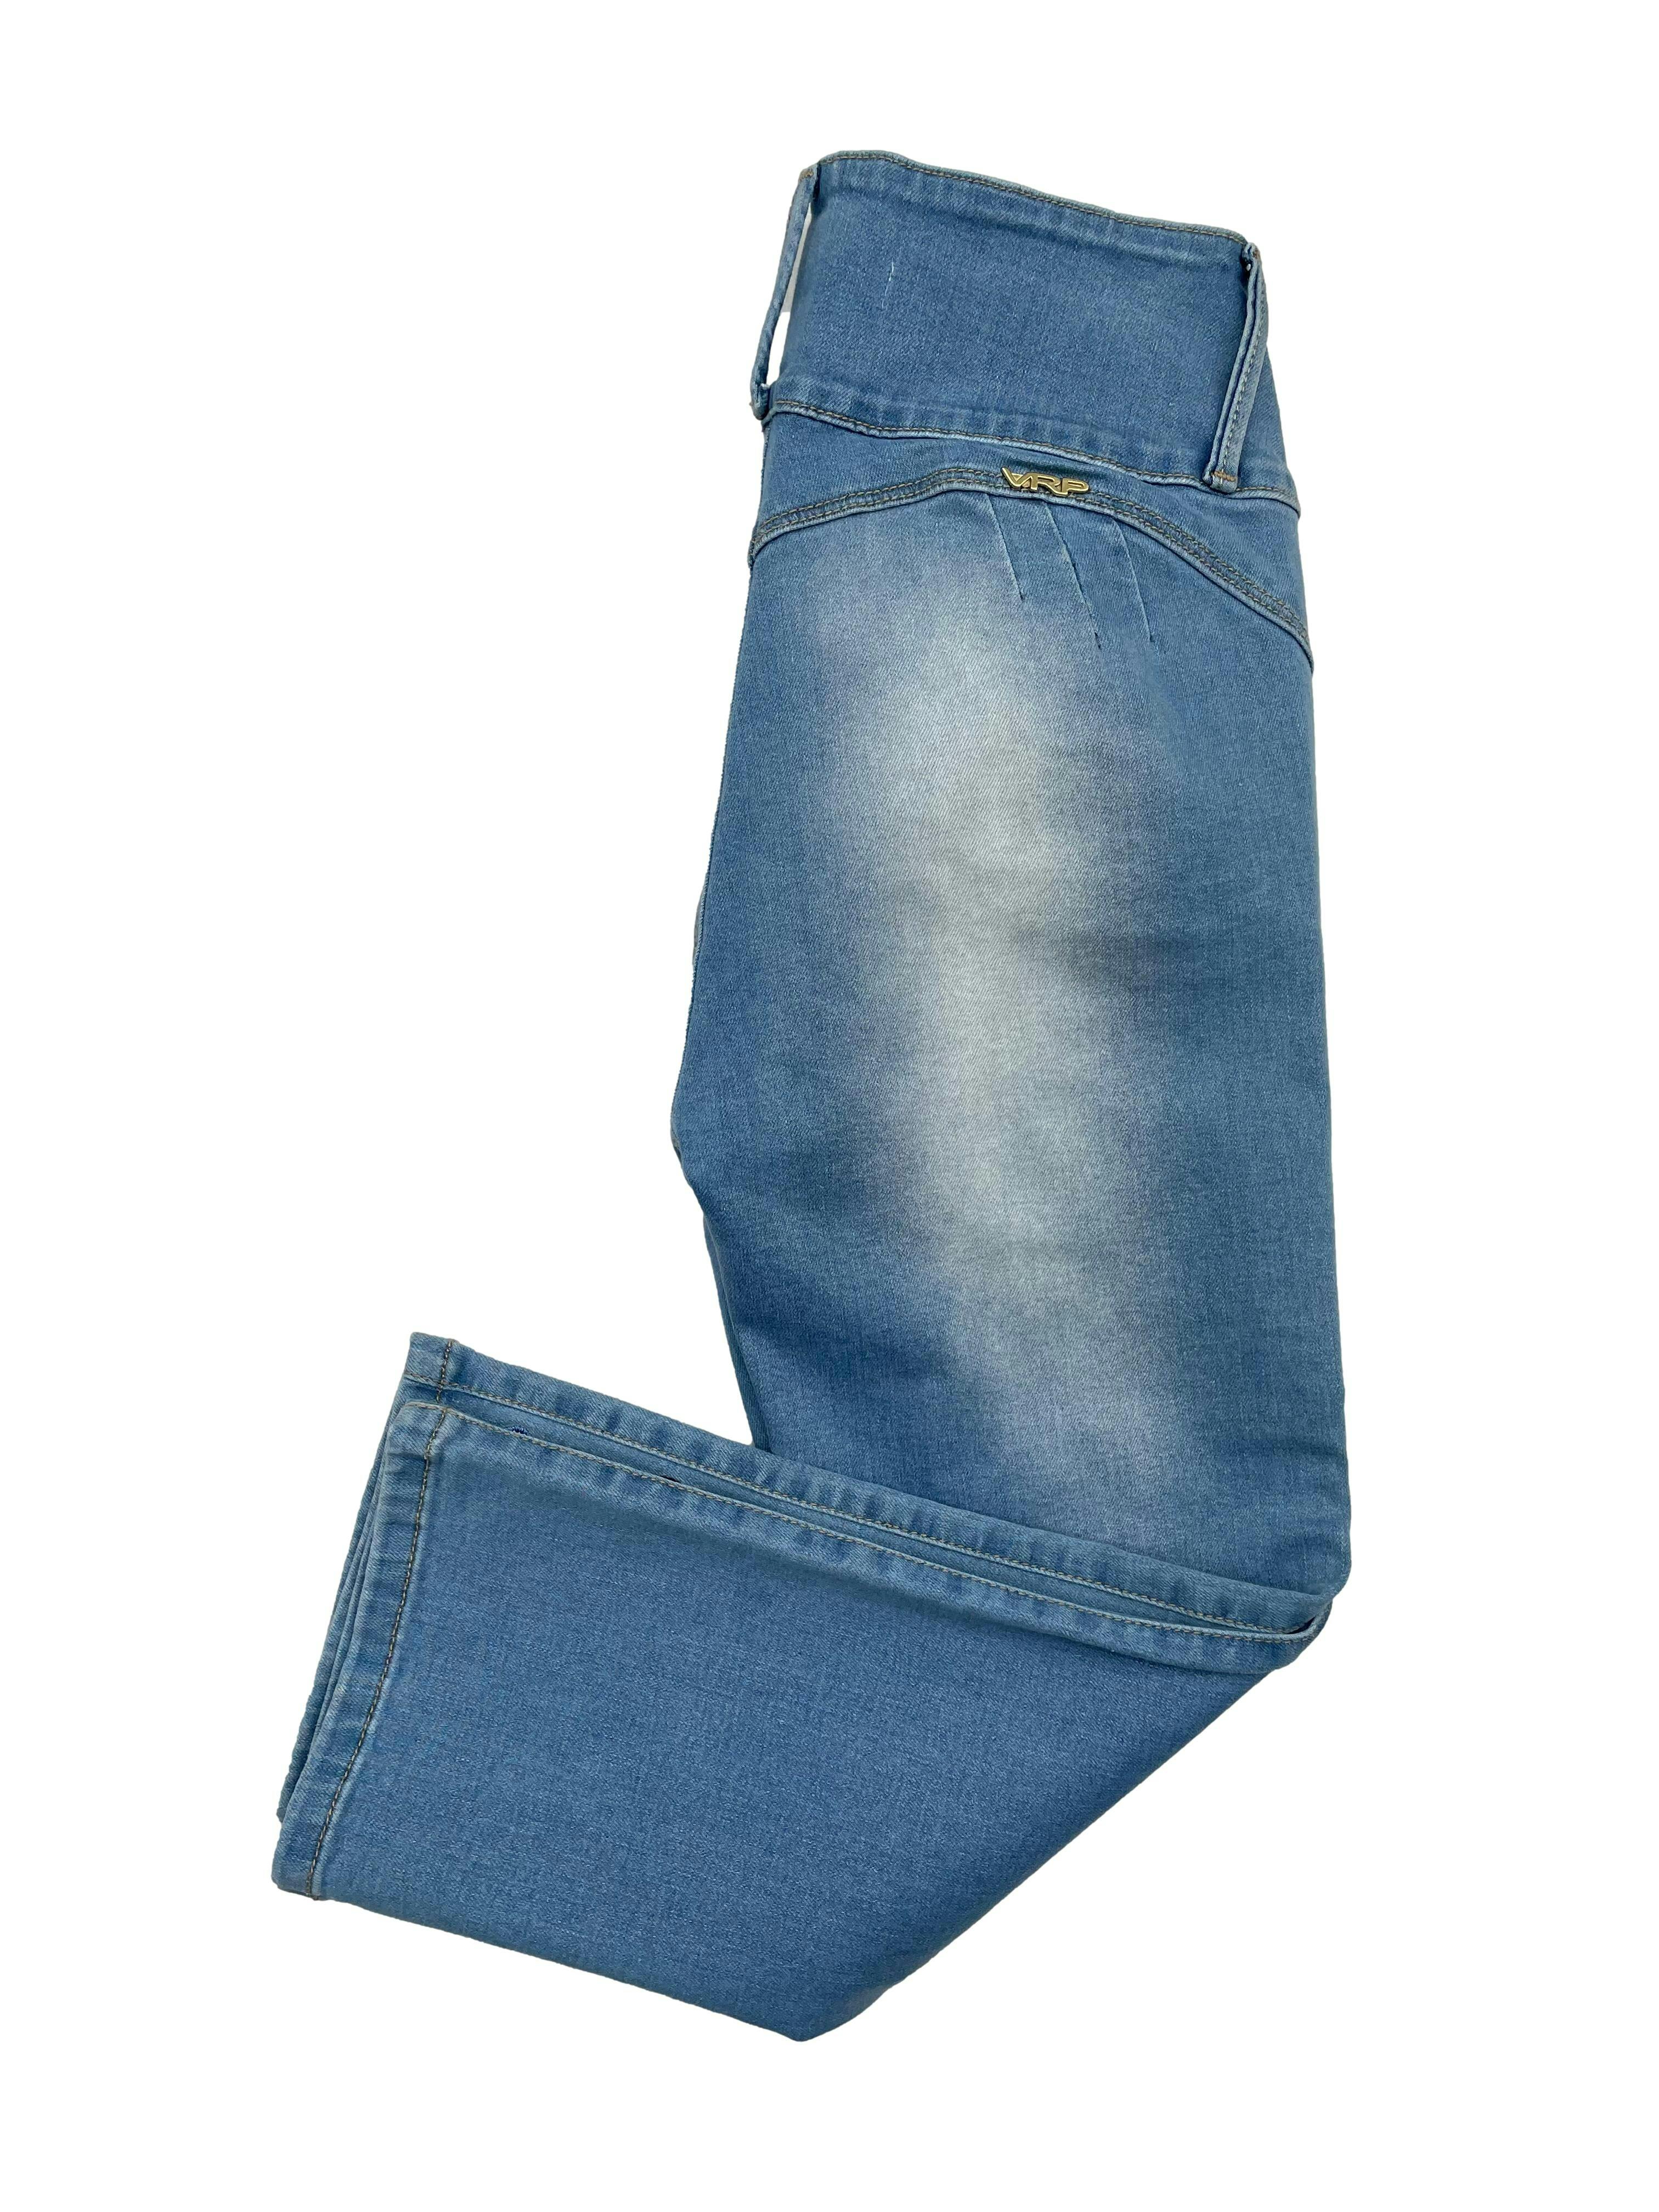 Jeans capri efecto lavado, tela stretch, pretina ancha, bolsillos, pinzas posteriores y bordado floral. Cintura 64cm sin estirar, Largo 75cm.